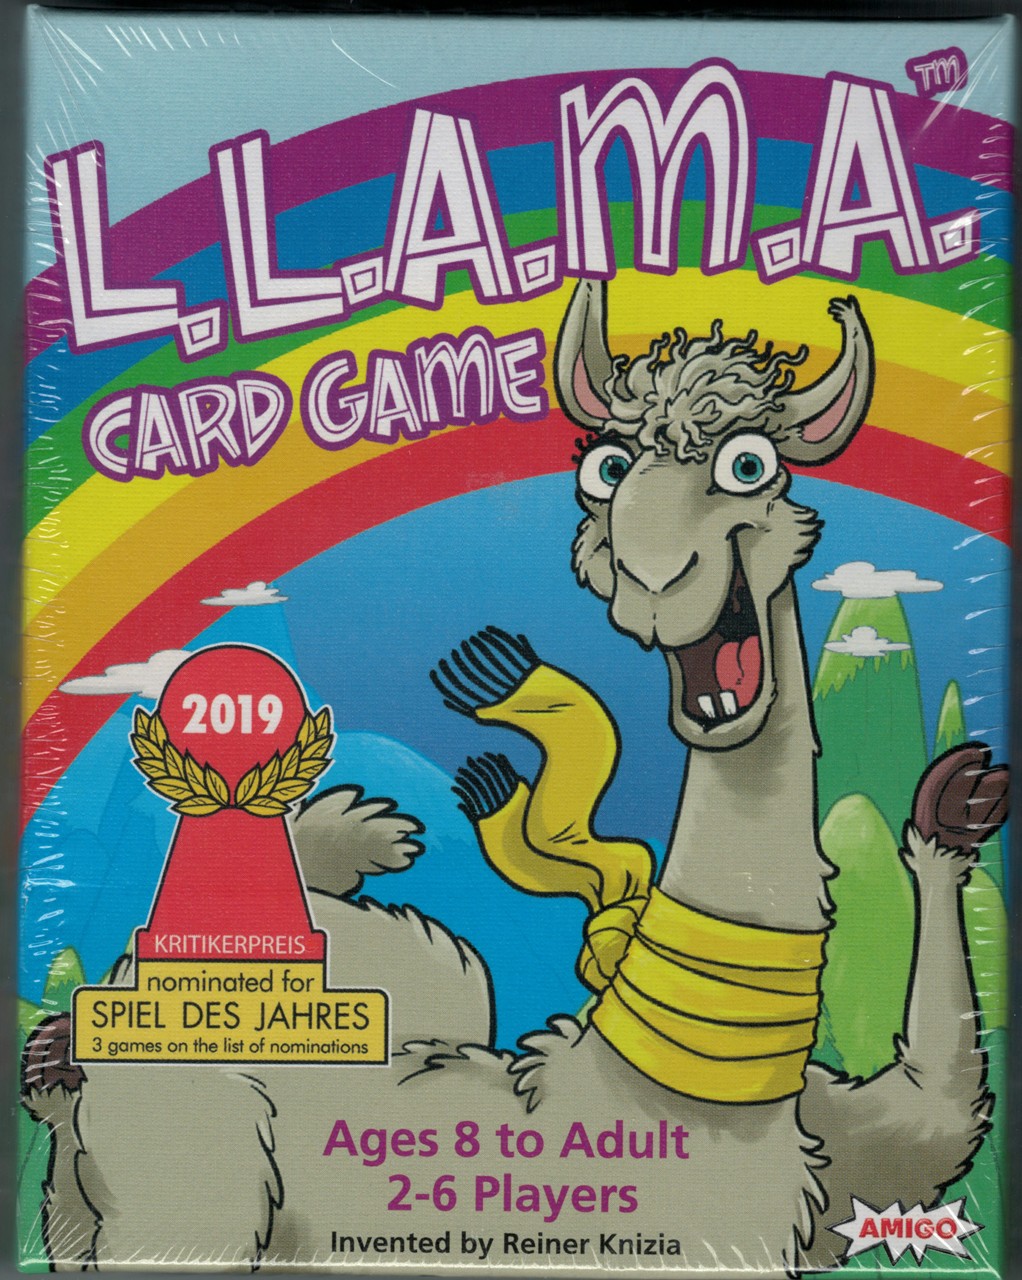 L.L.A.M.A. (Llama)